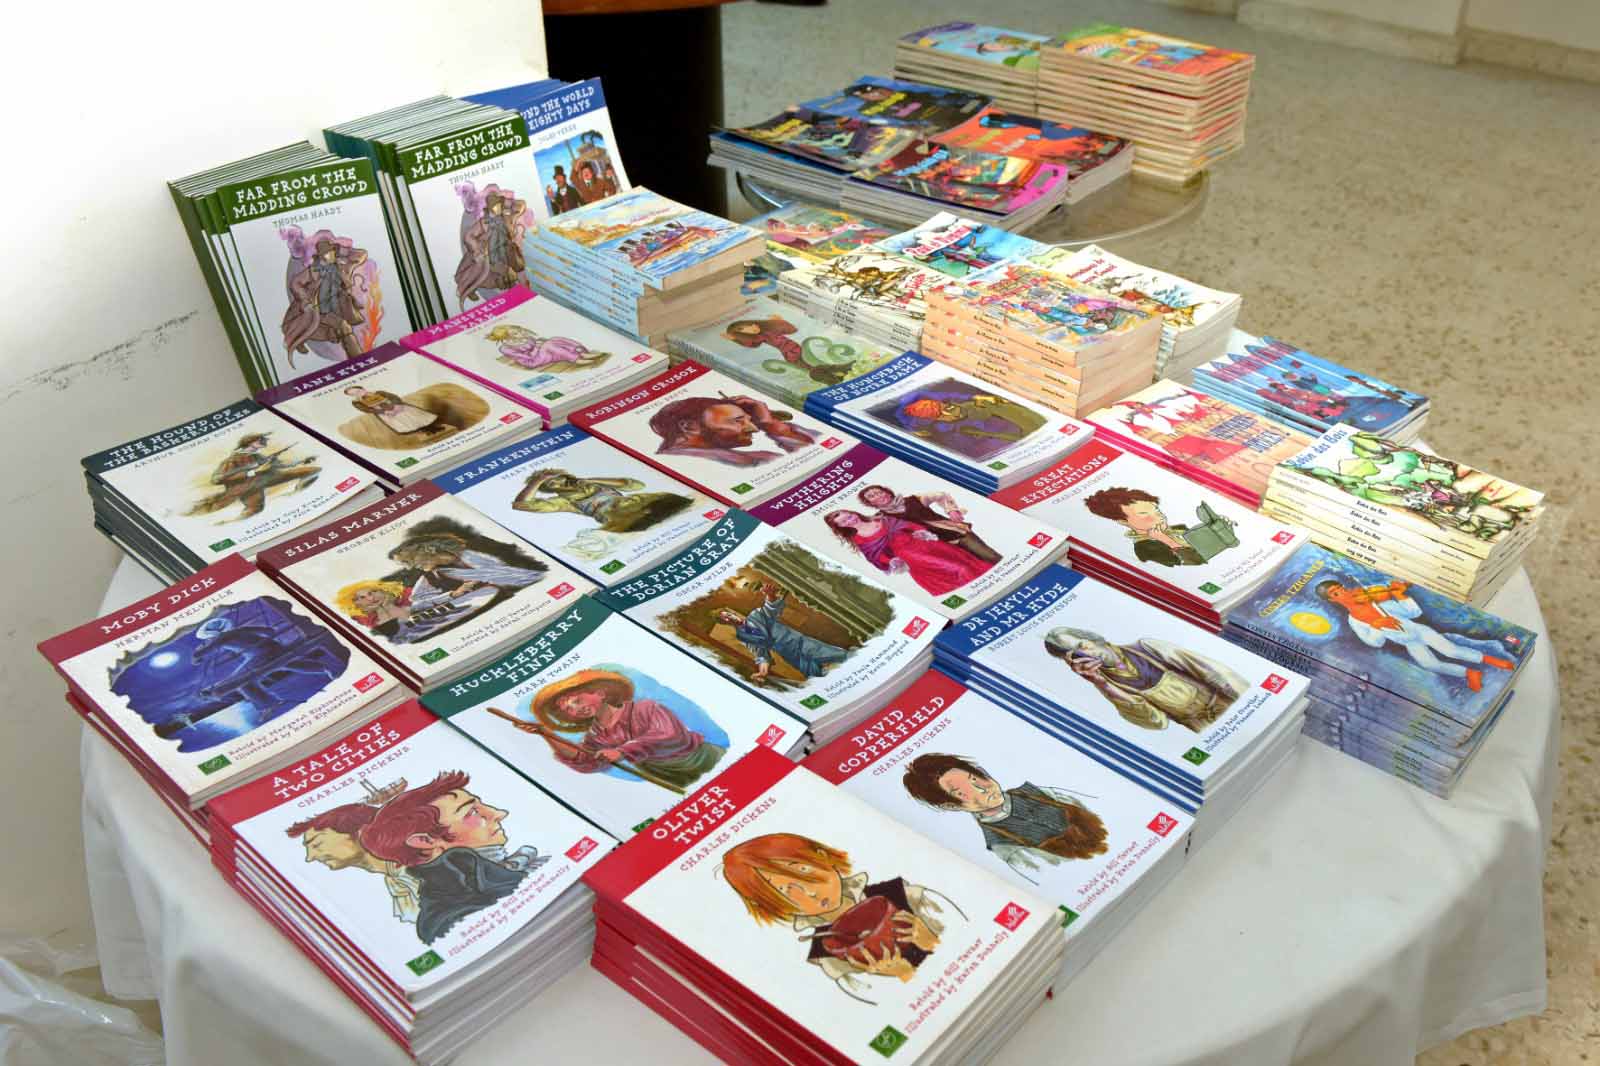 لتشجيع الناشئة على المطالعة والقراءة مجموعة متنوعة من الاصدارات الثقافية قدمت لمؤسسة الطوارىء في مدينة الميناء / طرابلس